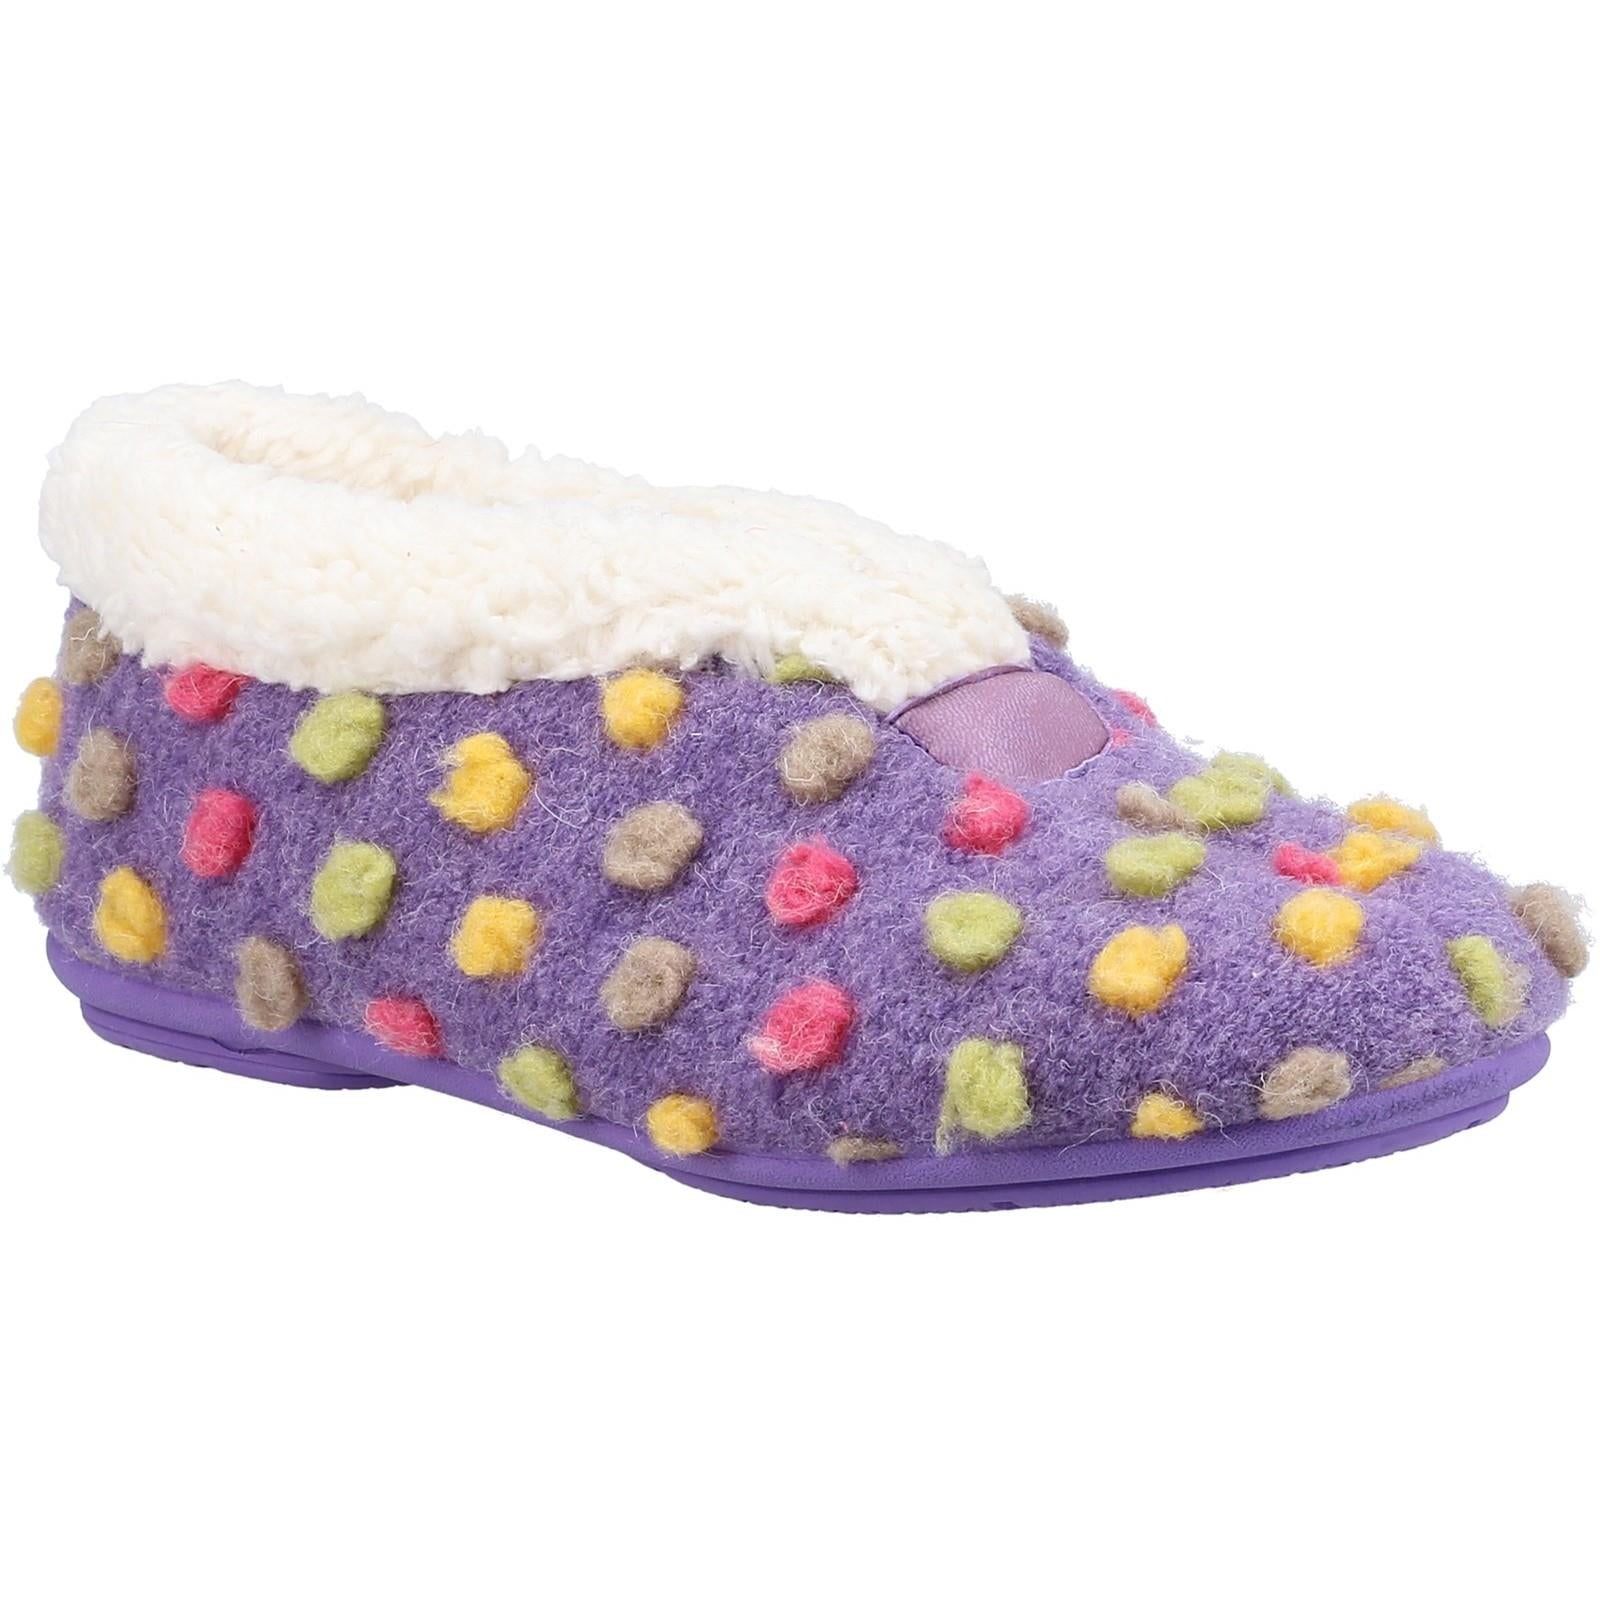 Fleet & Foster Snowberry purple decorative polka dot upper ladies slipper